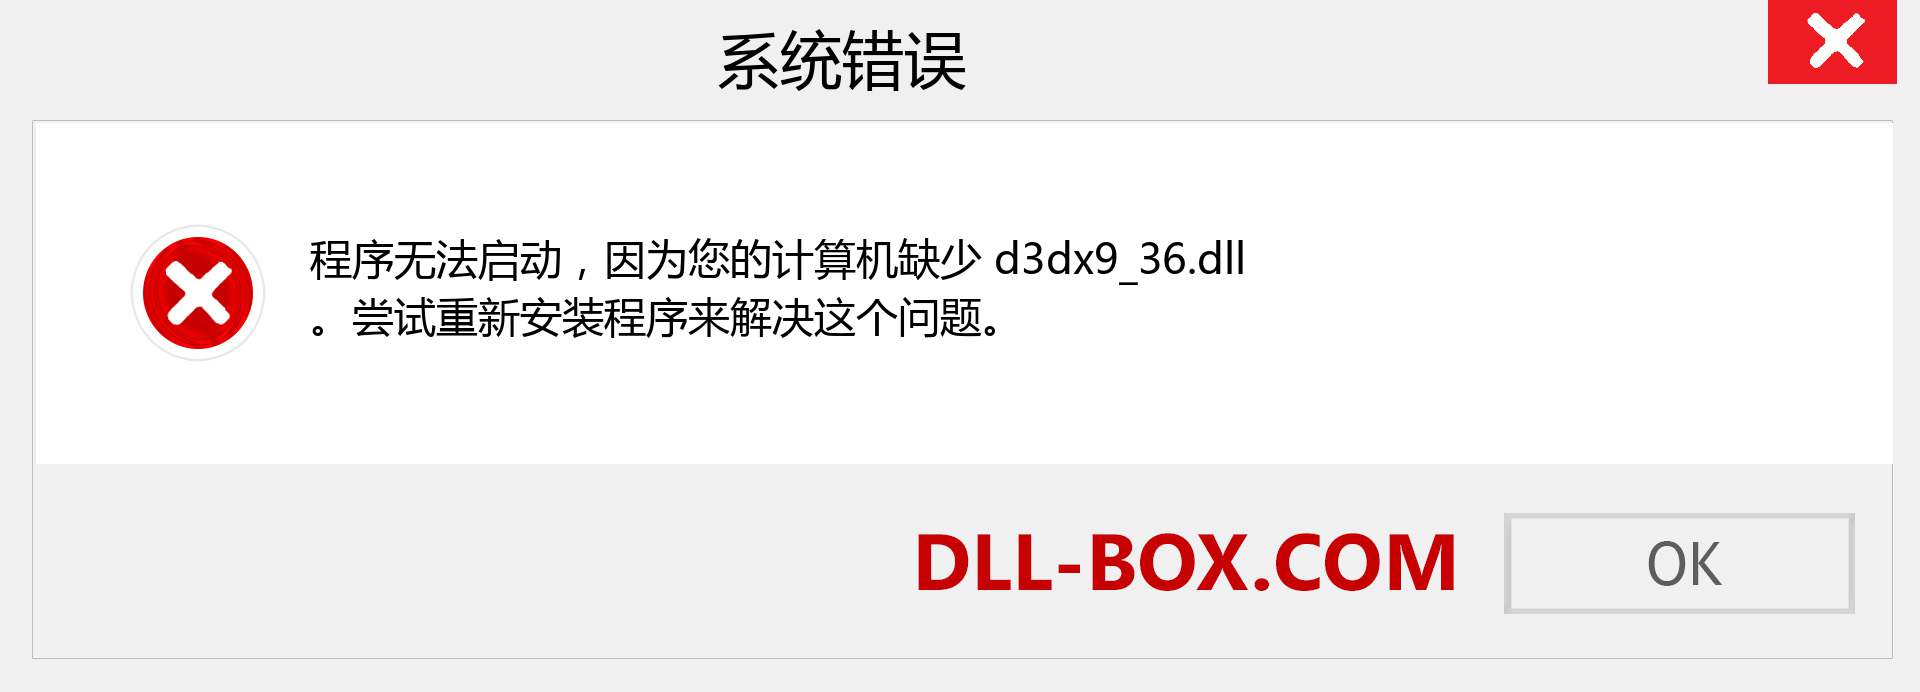 d3dx9_36.dll 文件丢失？。 适用于 Windows 7、8、10 的下载 - 修复 Windows、照片、图像上的 d3dx9_36 dll 丢失错误